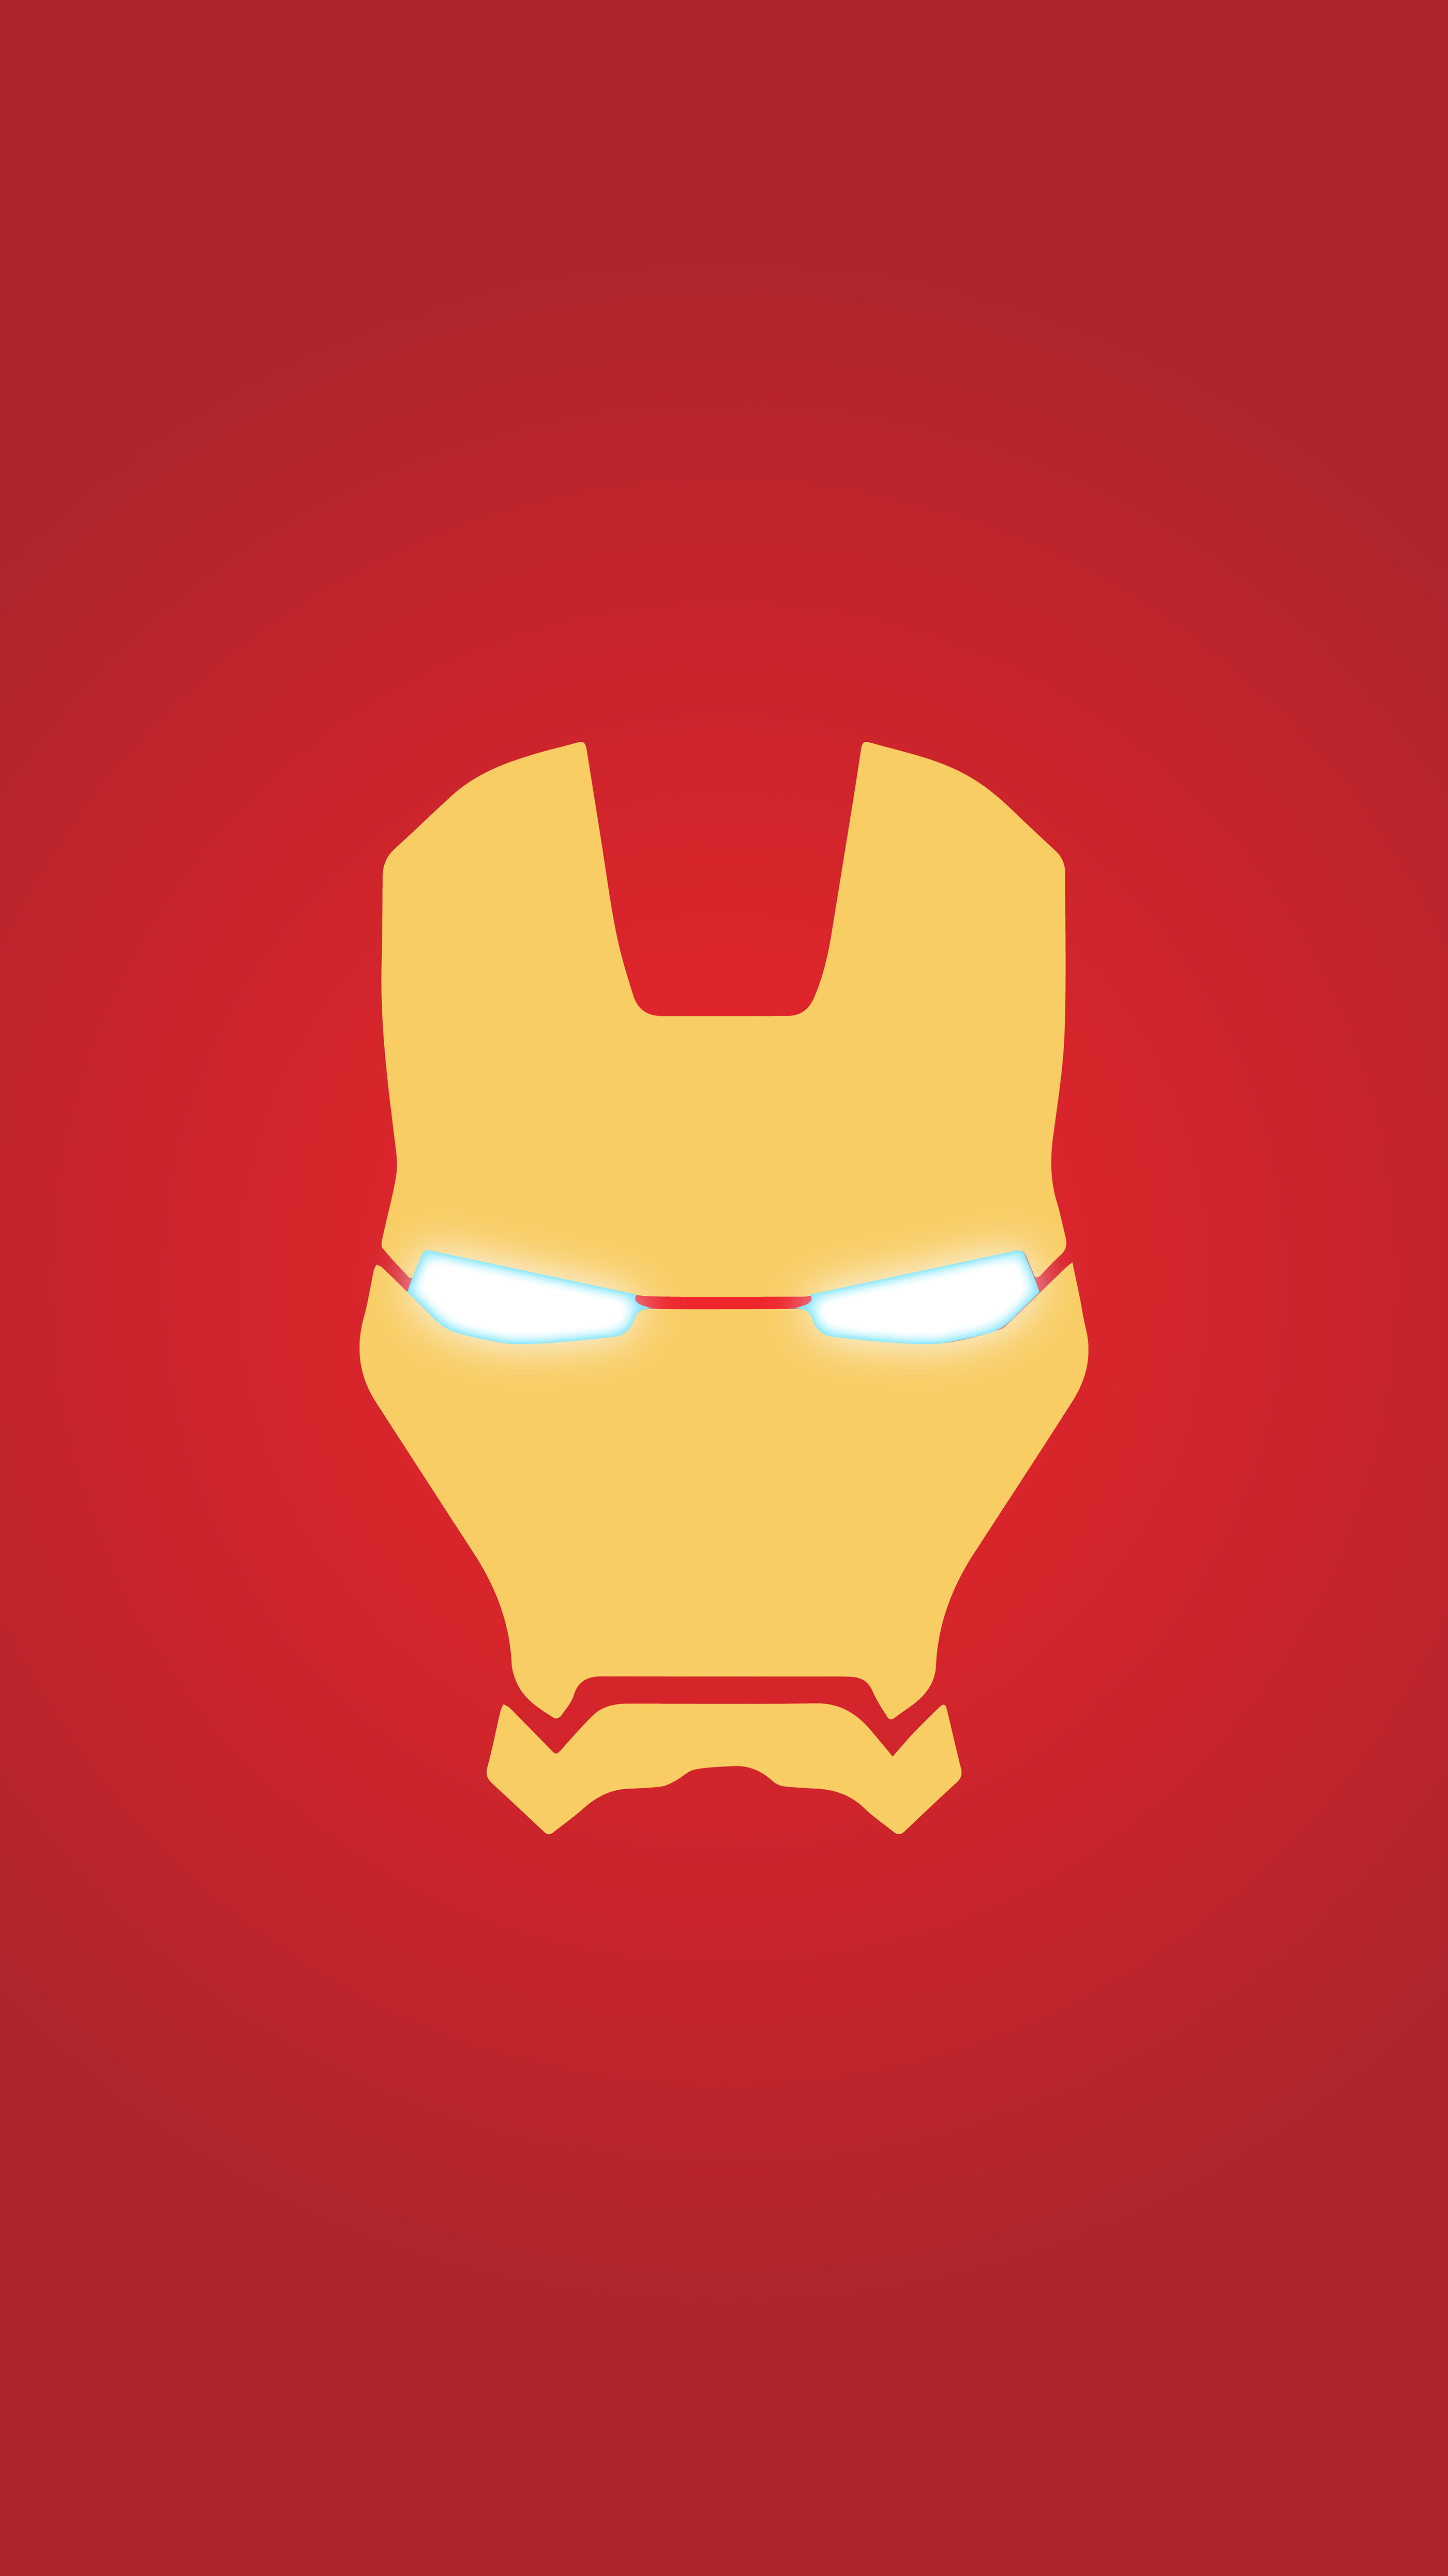 Marvel heroes p minimalist smartphone wallpapers on